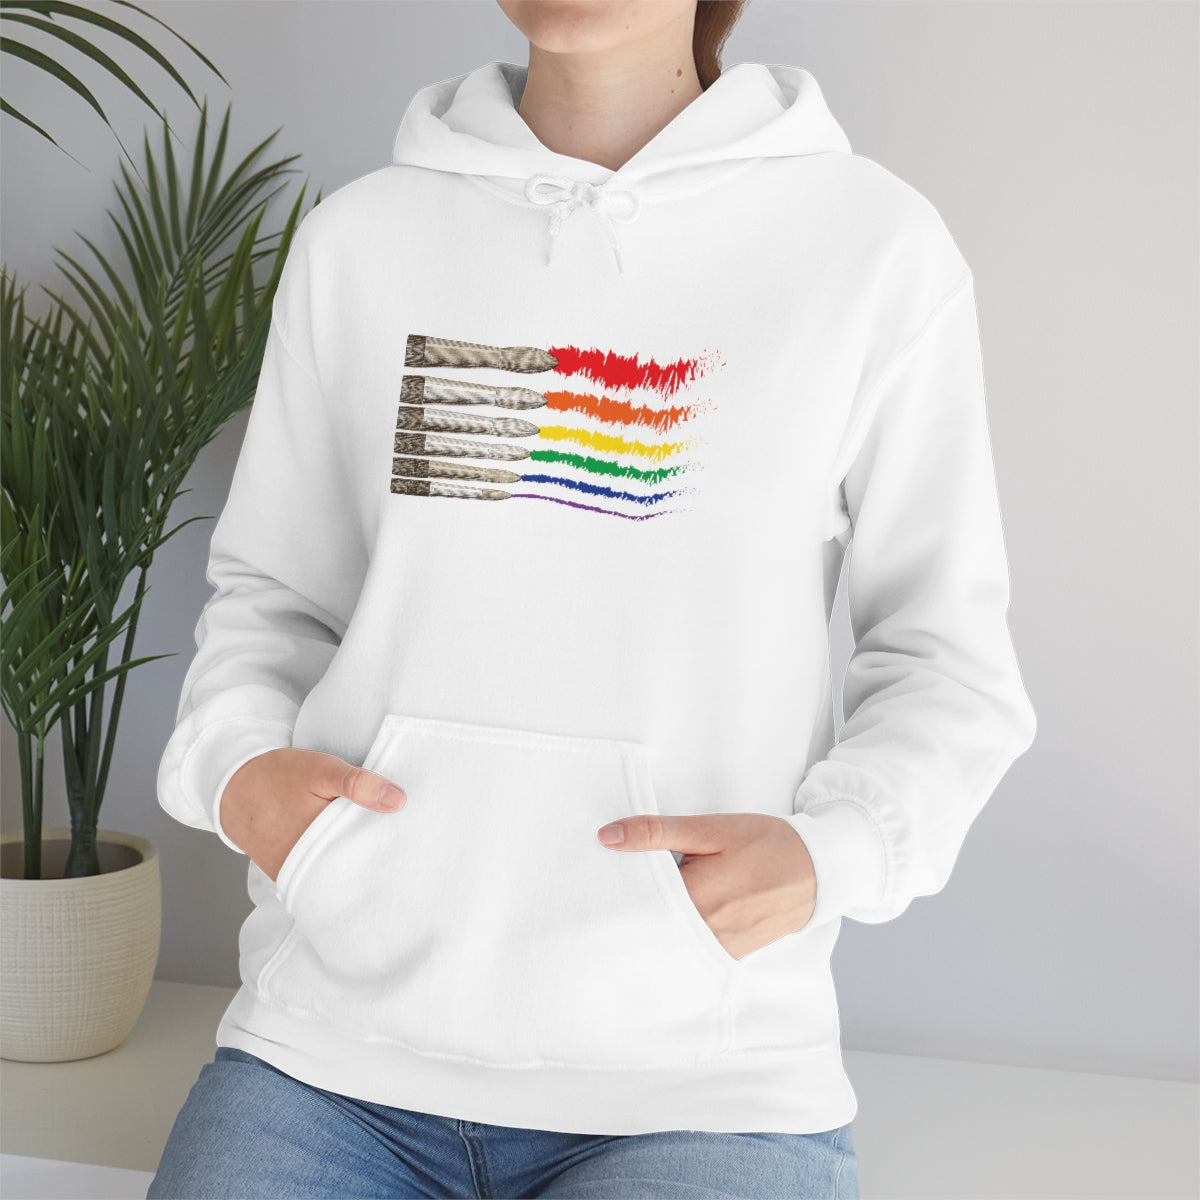 Strokes of Pride - Hooded Sweatshirt